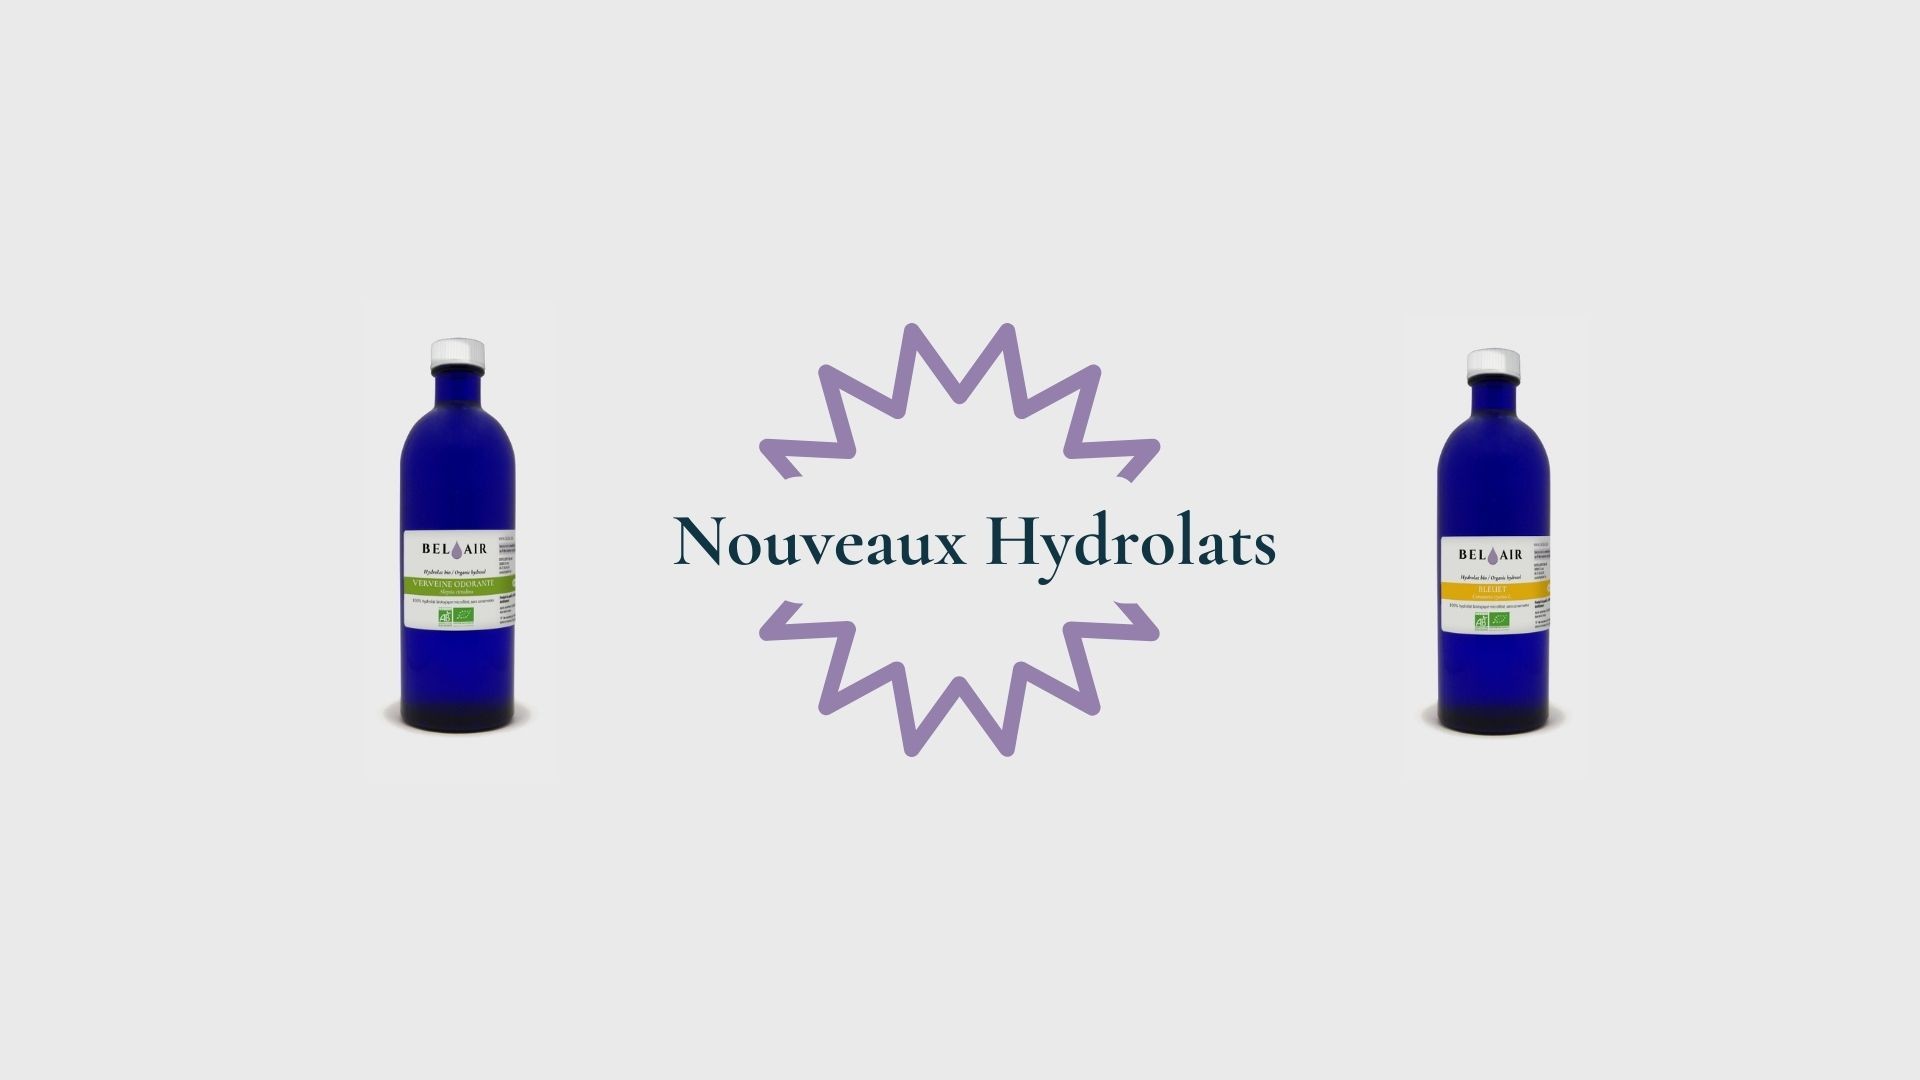 Hydrolat de Verveine odorante bio français et Hydrolat de bleuet bio, nouveautés